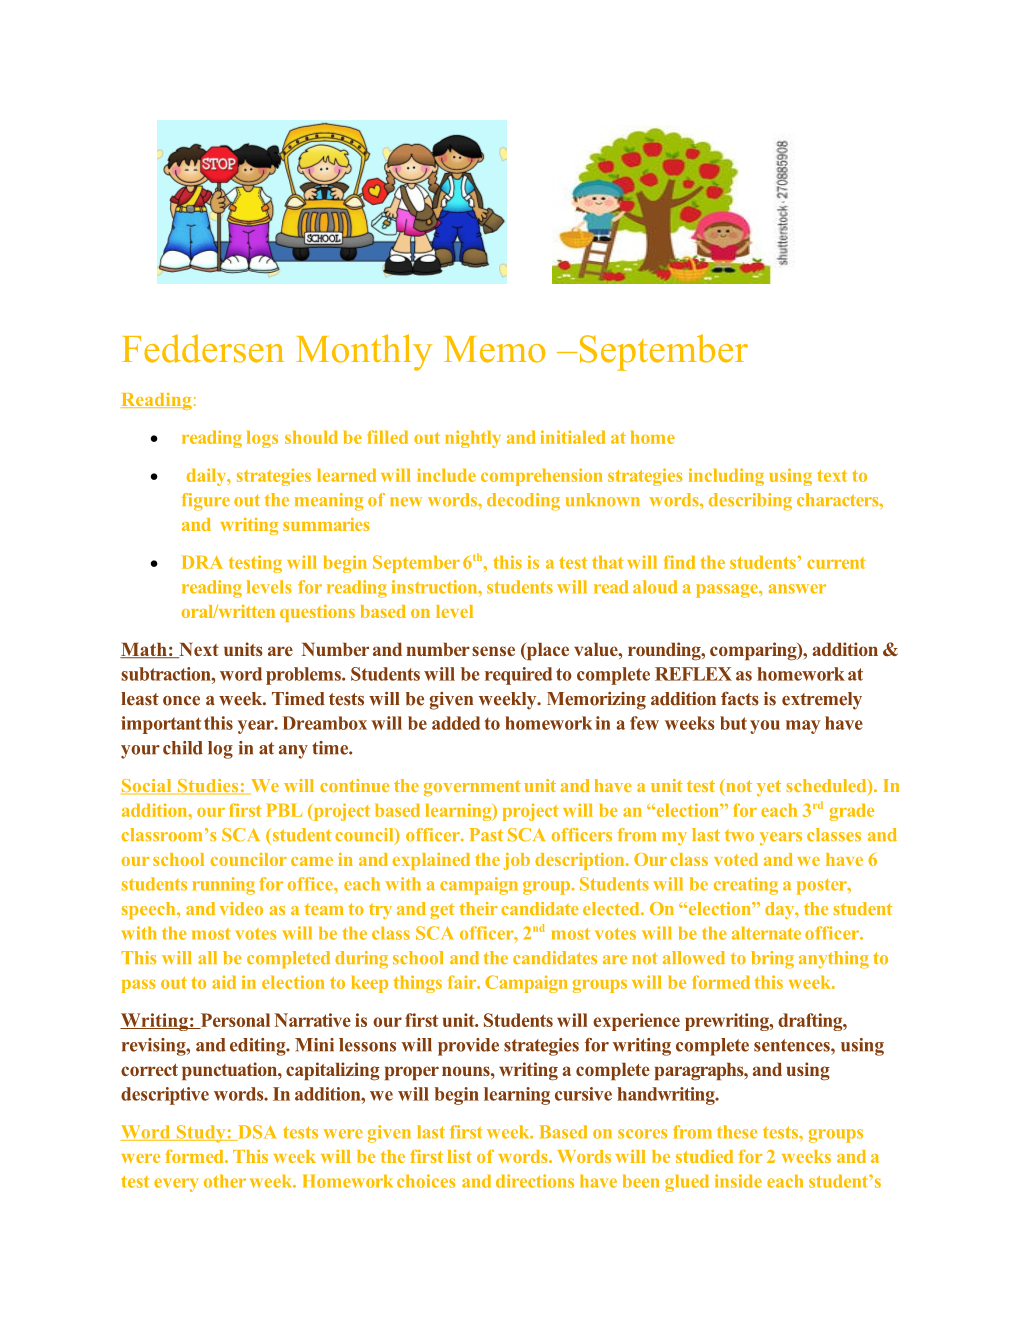 Feddersen Monthly Memo September